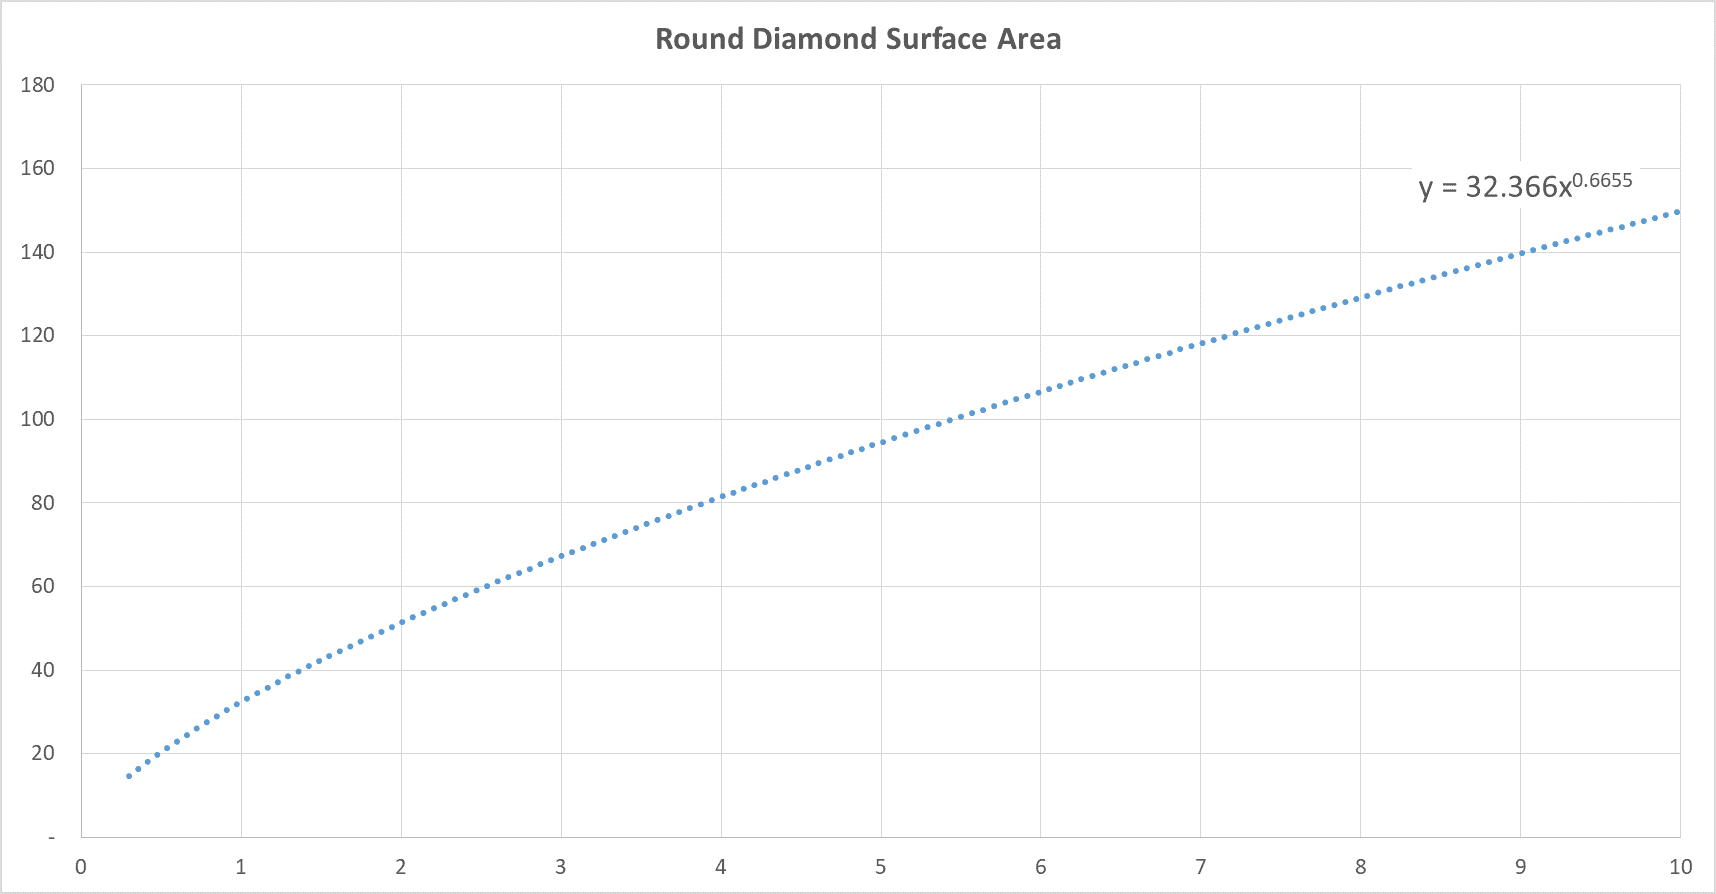 Round diamond size chart